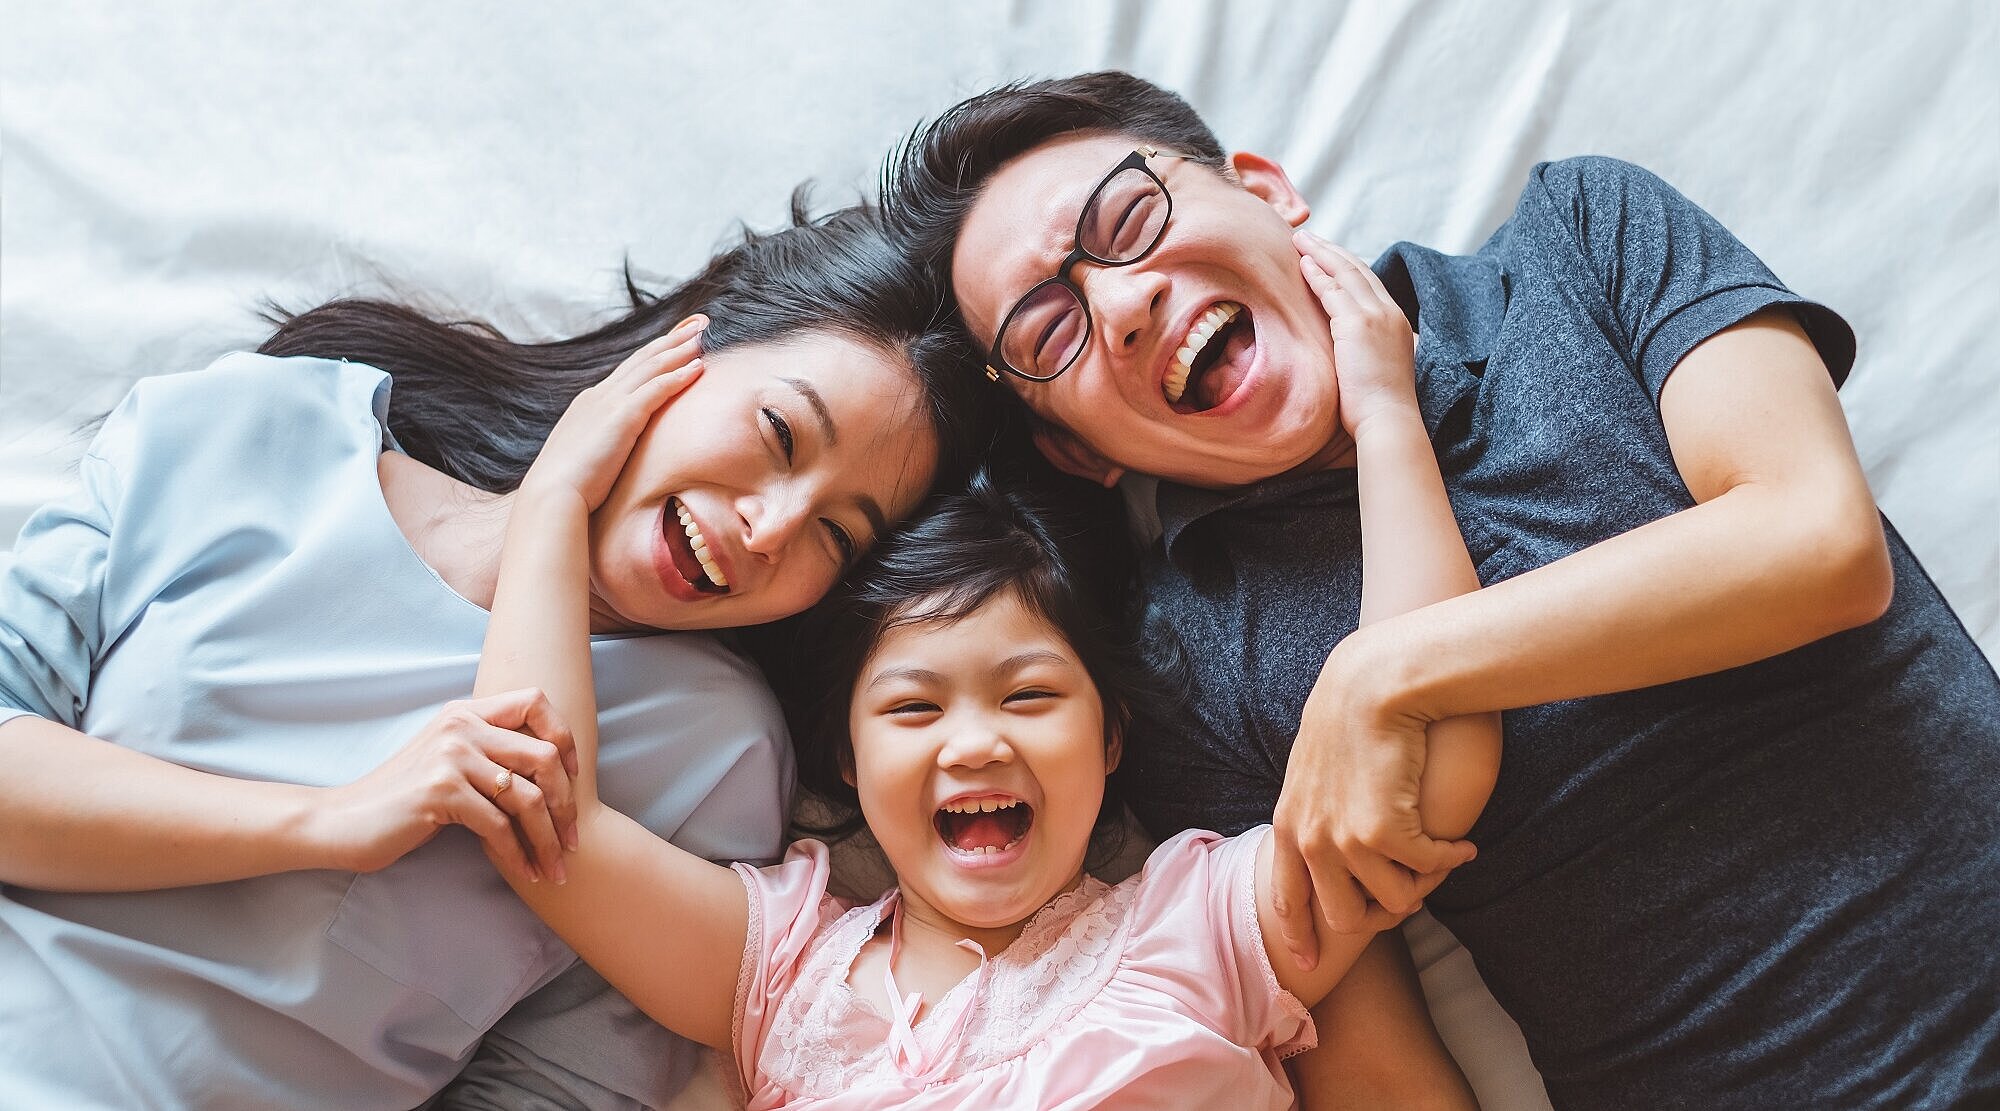 Foto: Asiatische Familie liegt auf einem Bett und lacht in die Kamera